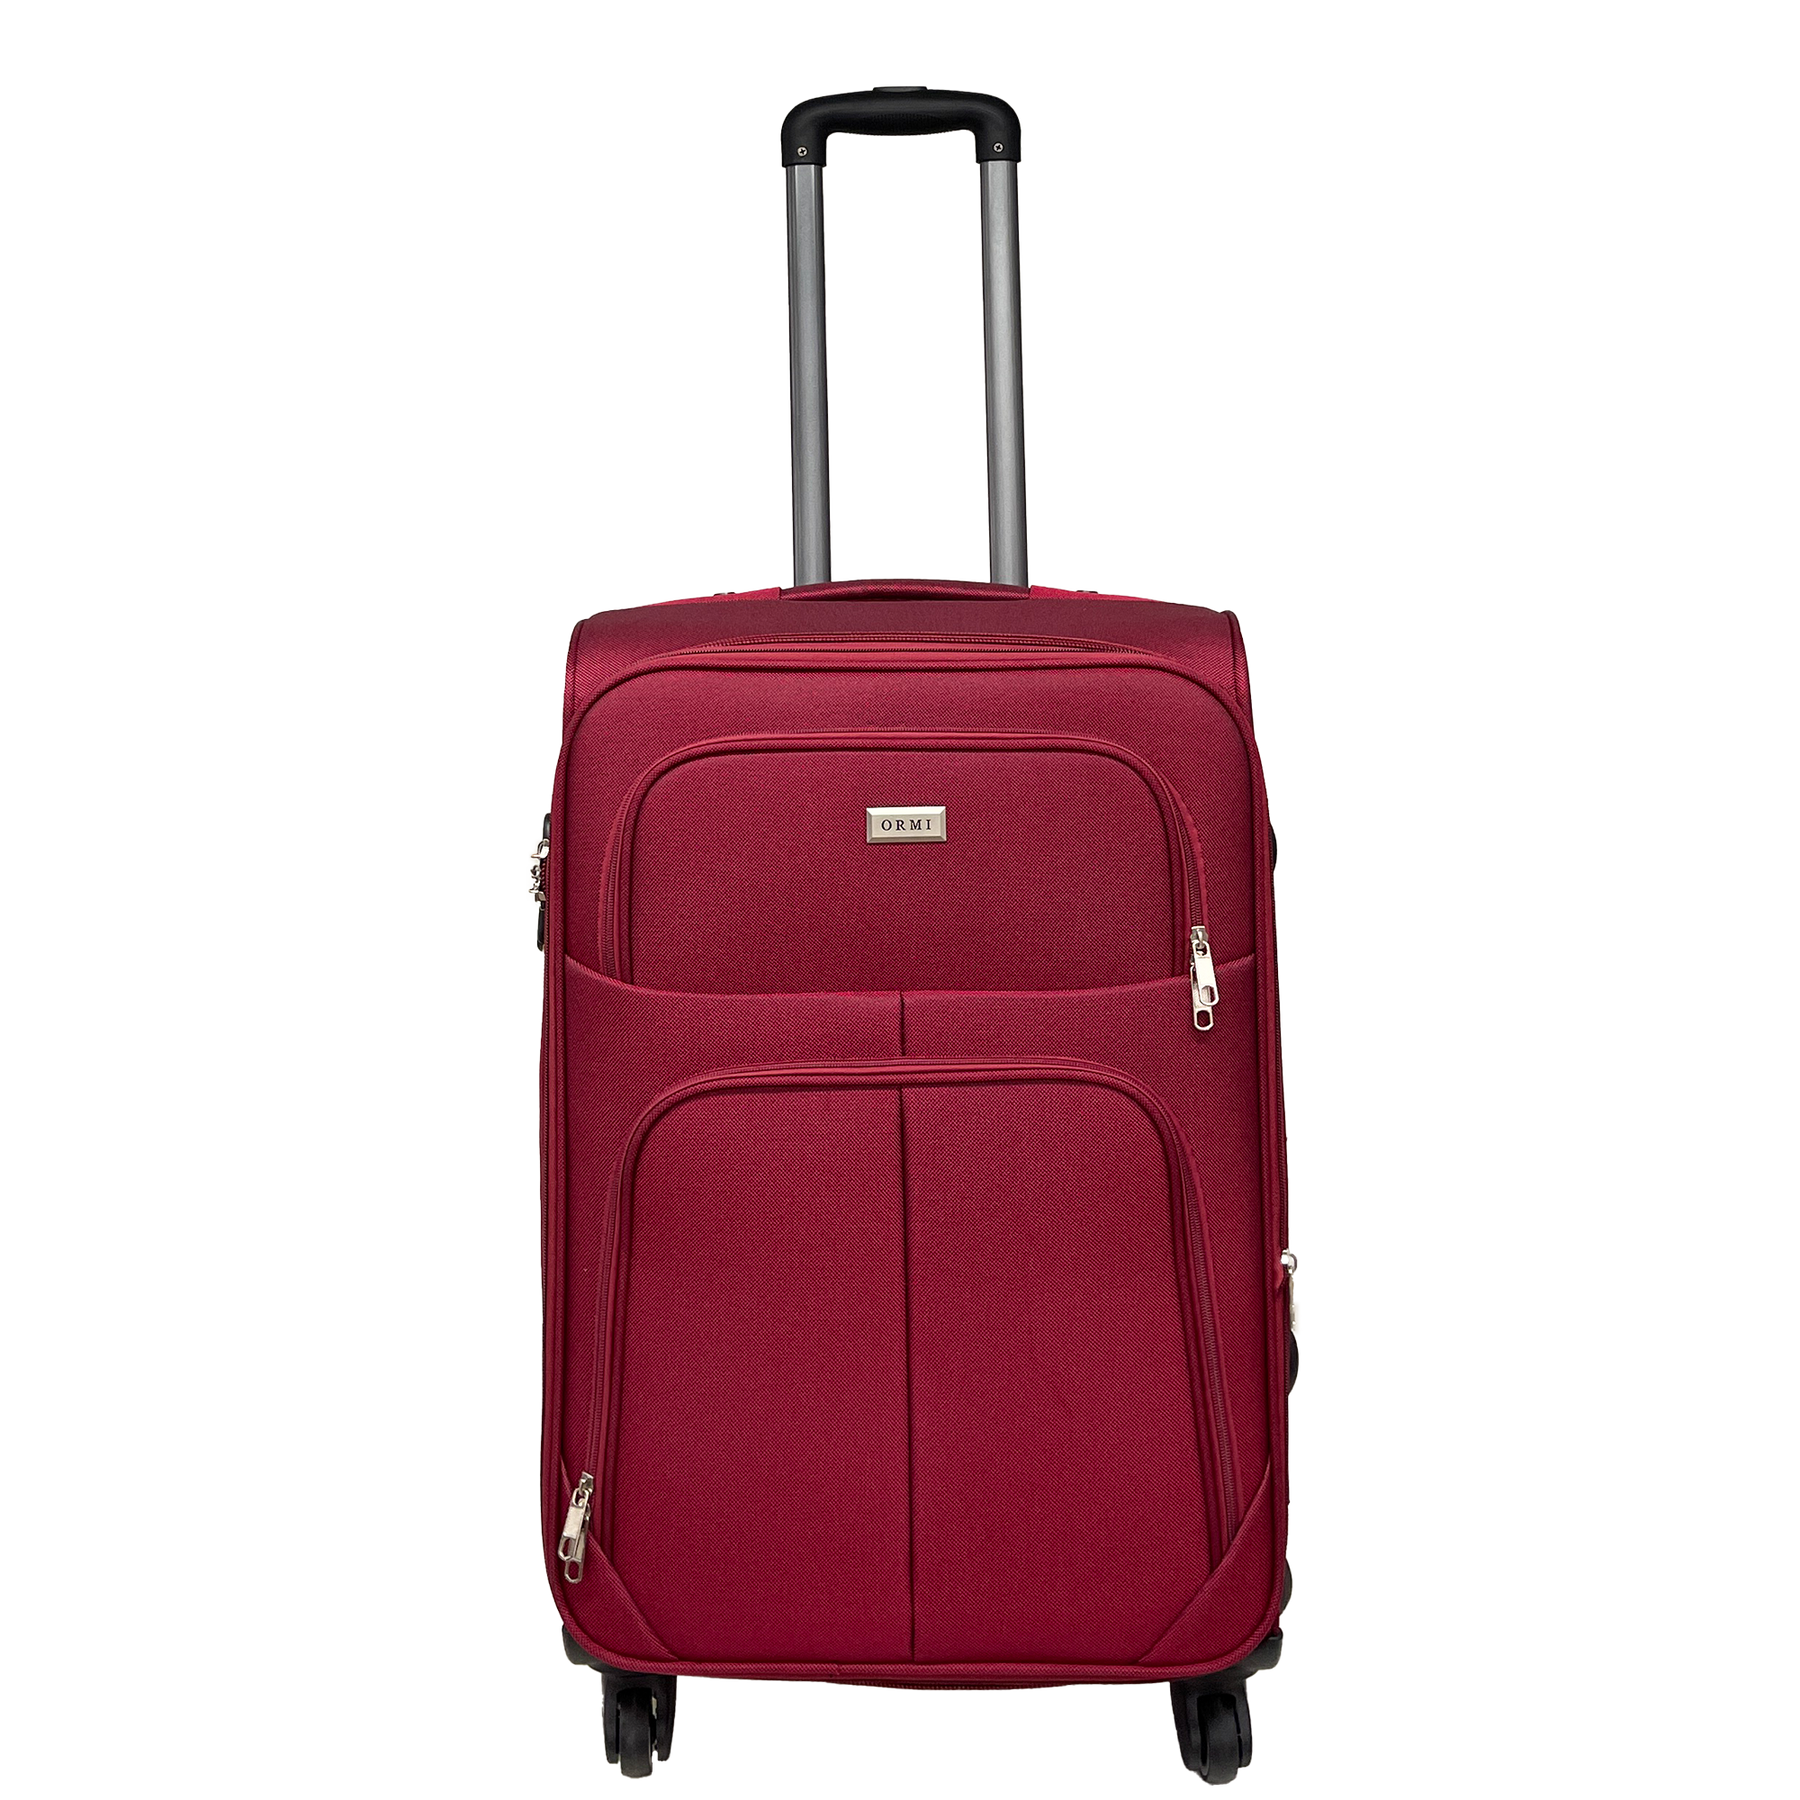 Střední Ormi polotvrdá rozšiřitelná cestovní taška 65x42x25/30 cm - Odolný a nárazuvzdorný materiál